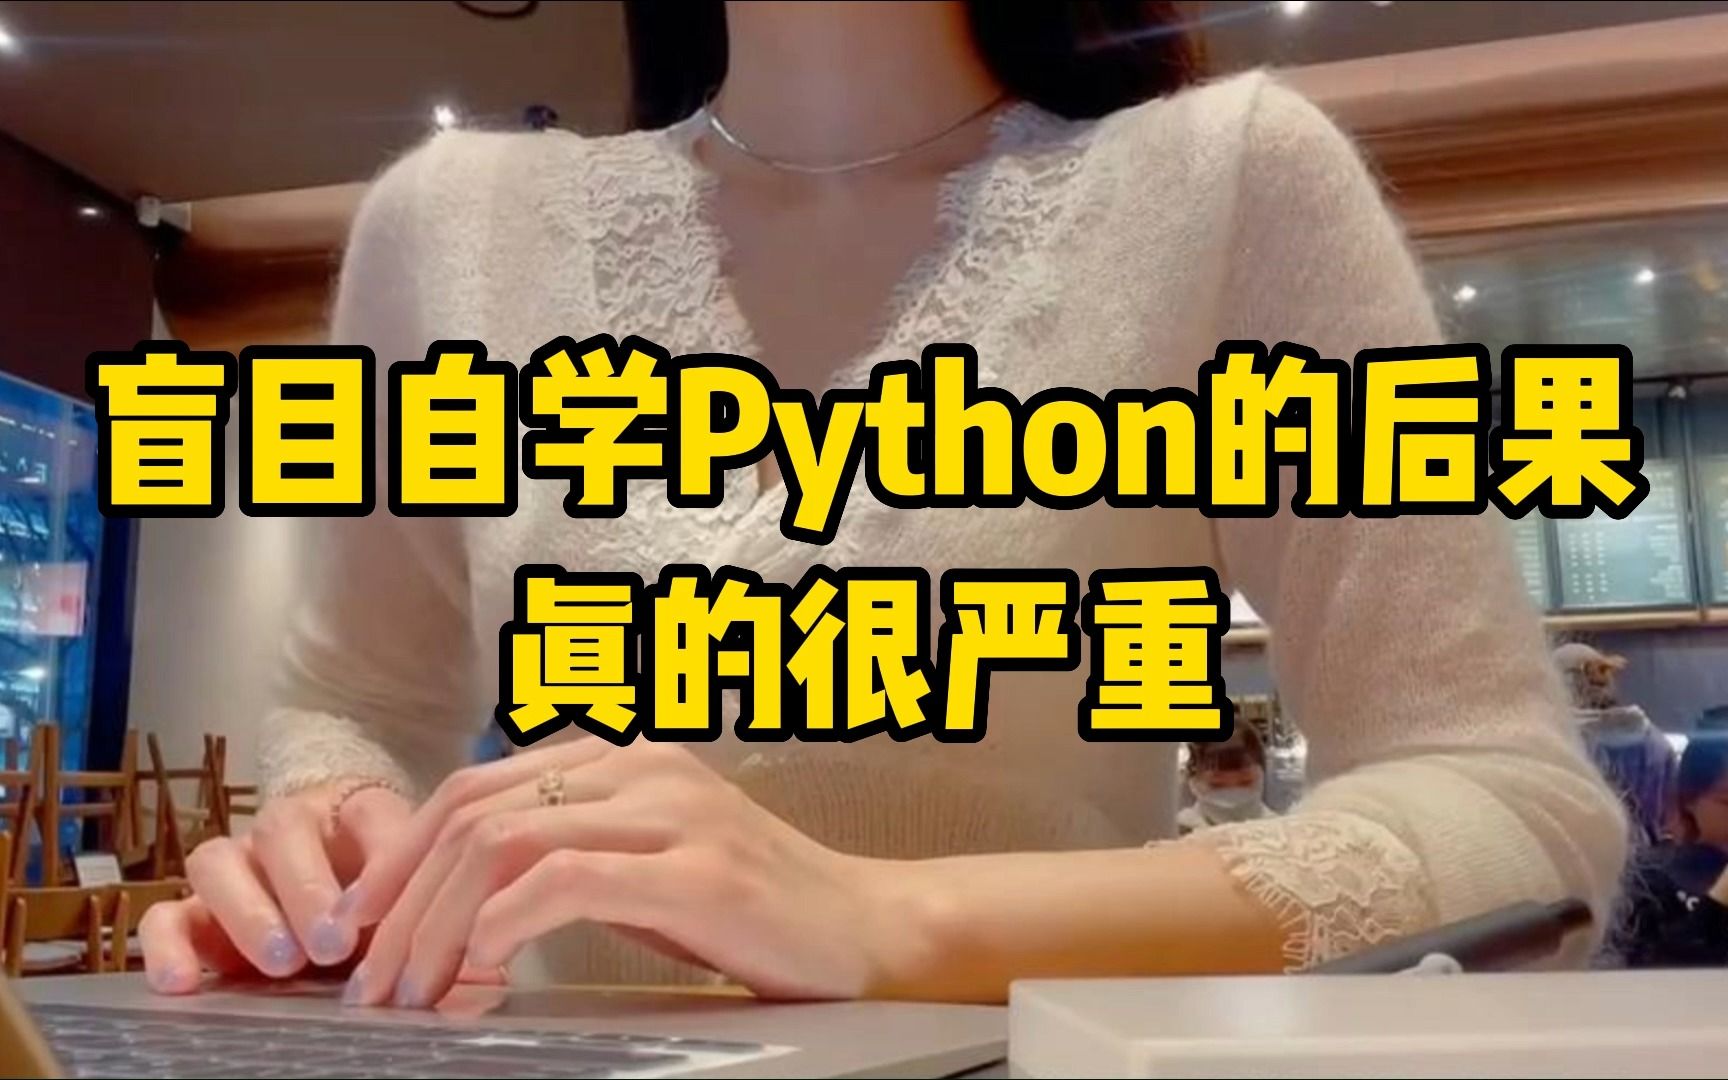 【自学Python】听劝！盲目自学Python后果真的很严重！